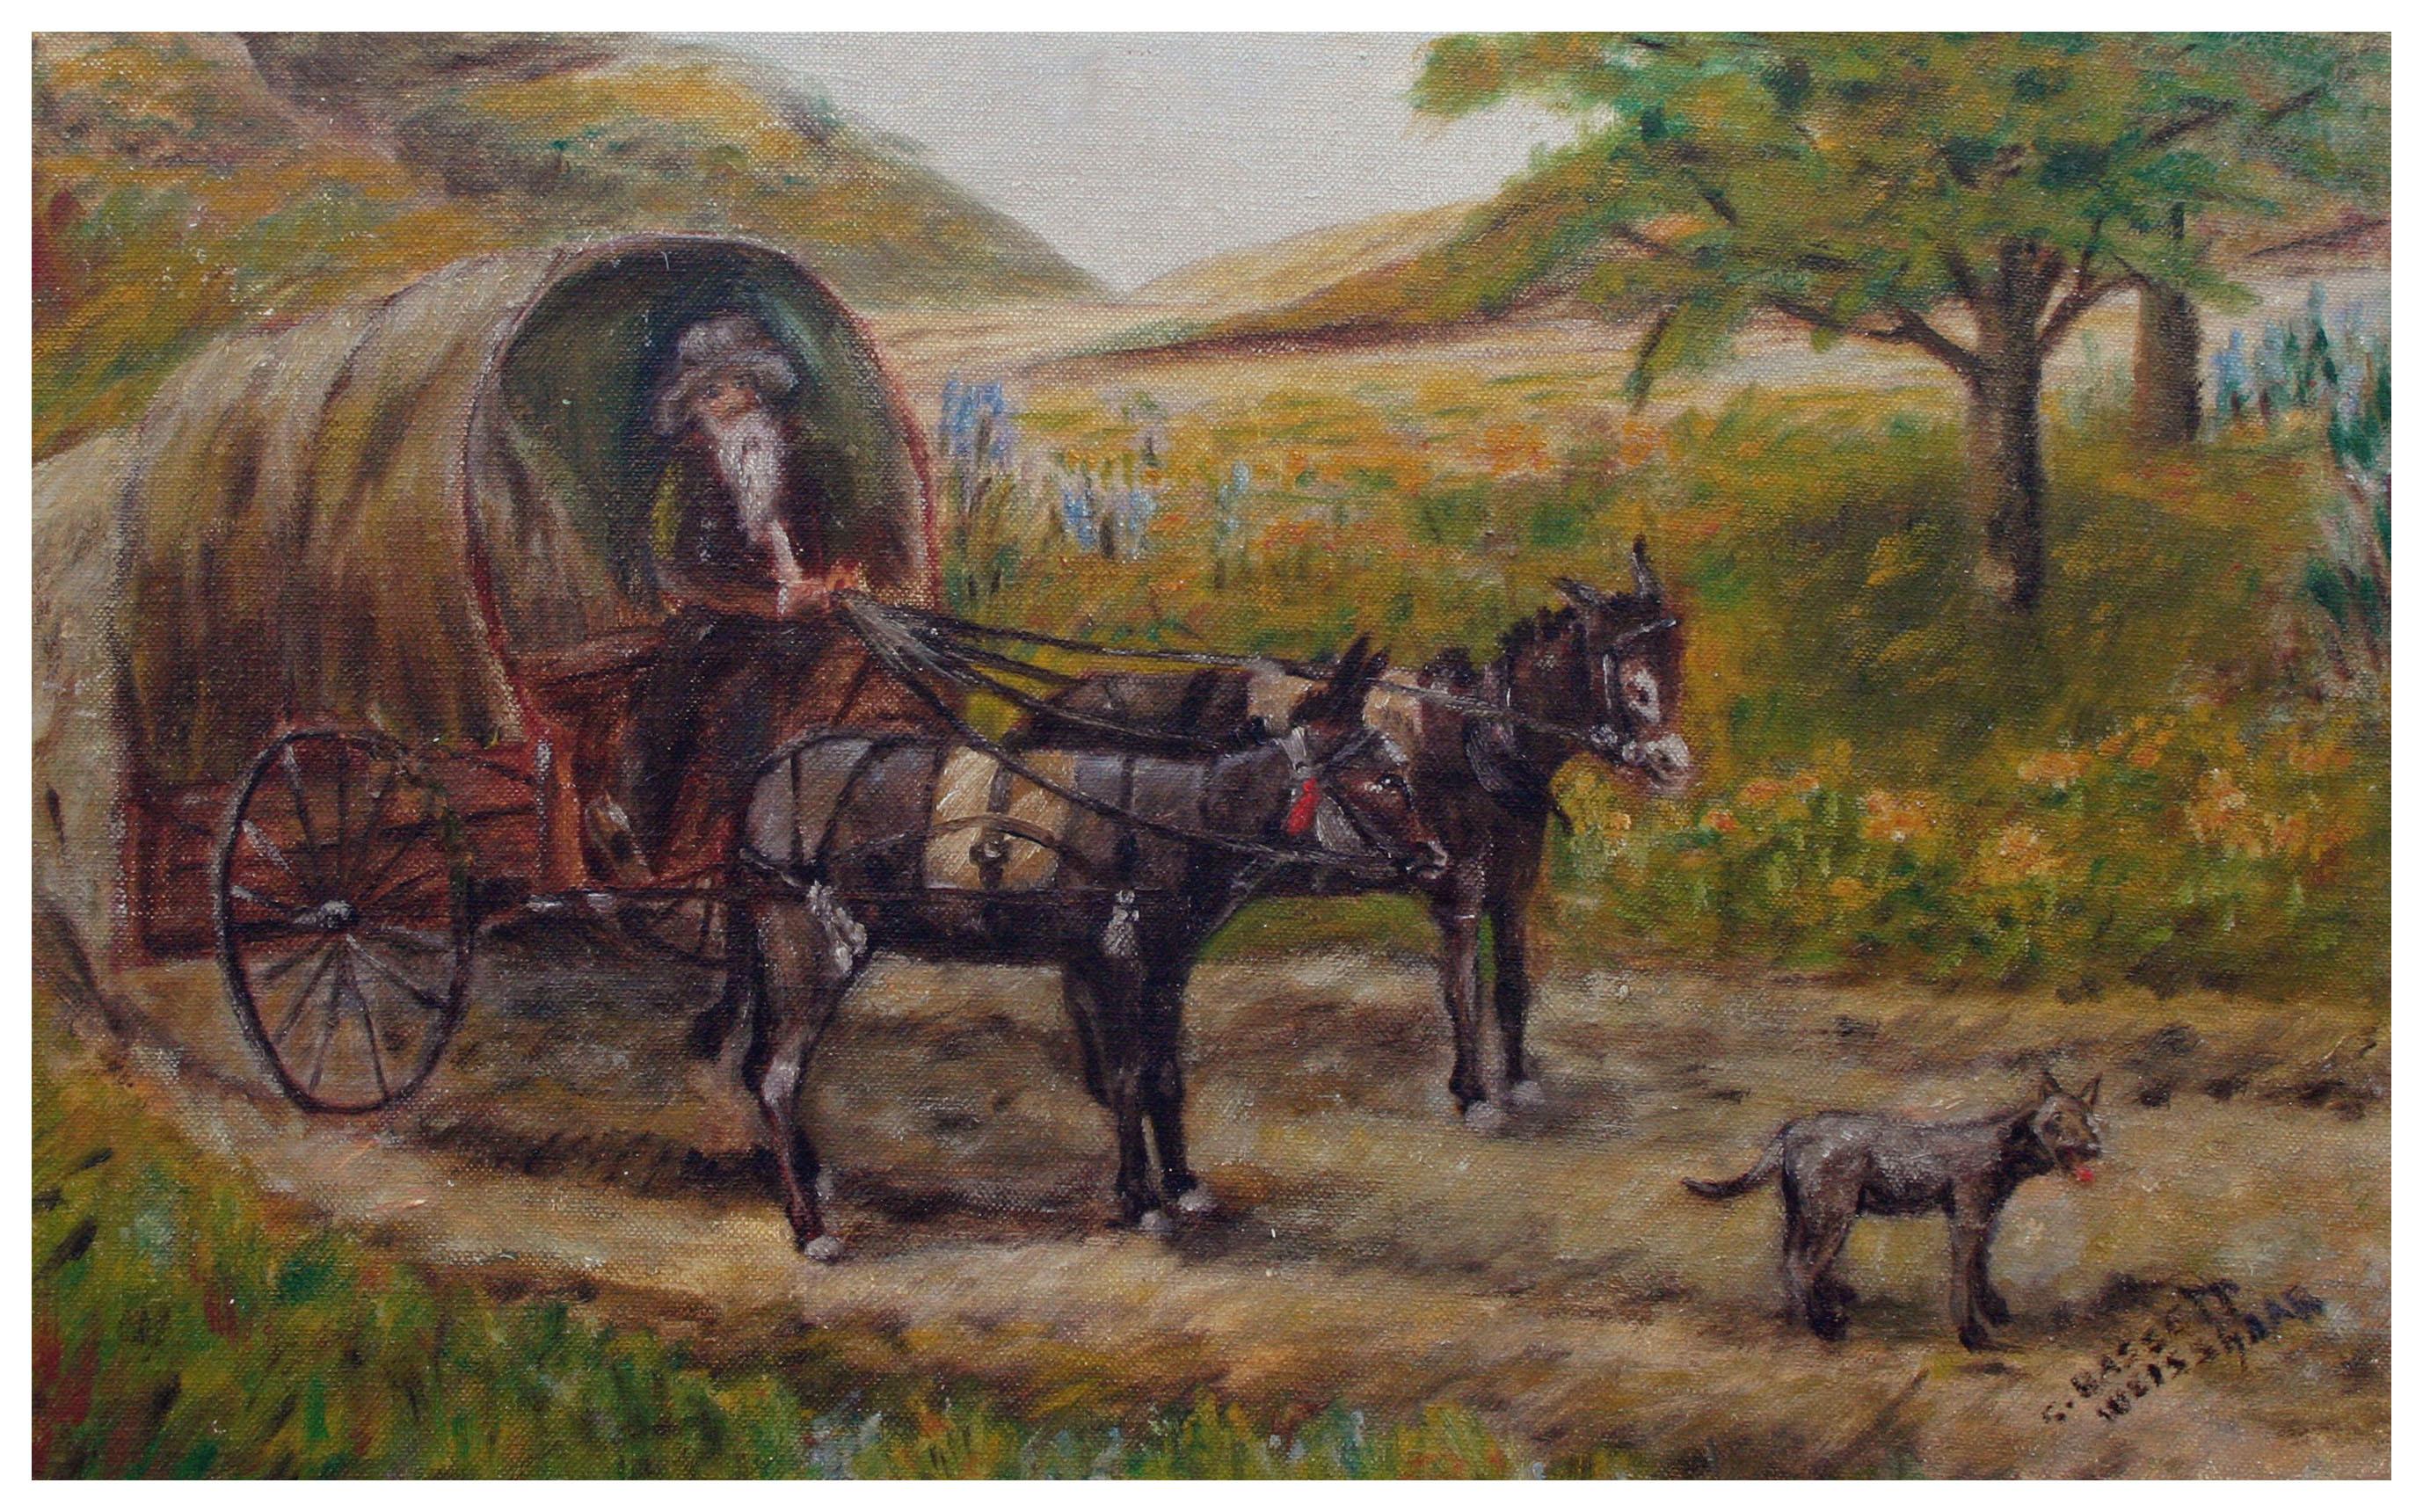 Wagon auf der Straße - Landschaft mit Eicheln aus dem frühen 20. Jahrhundert  – Painting von S. Bassett Weisshaar